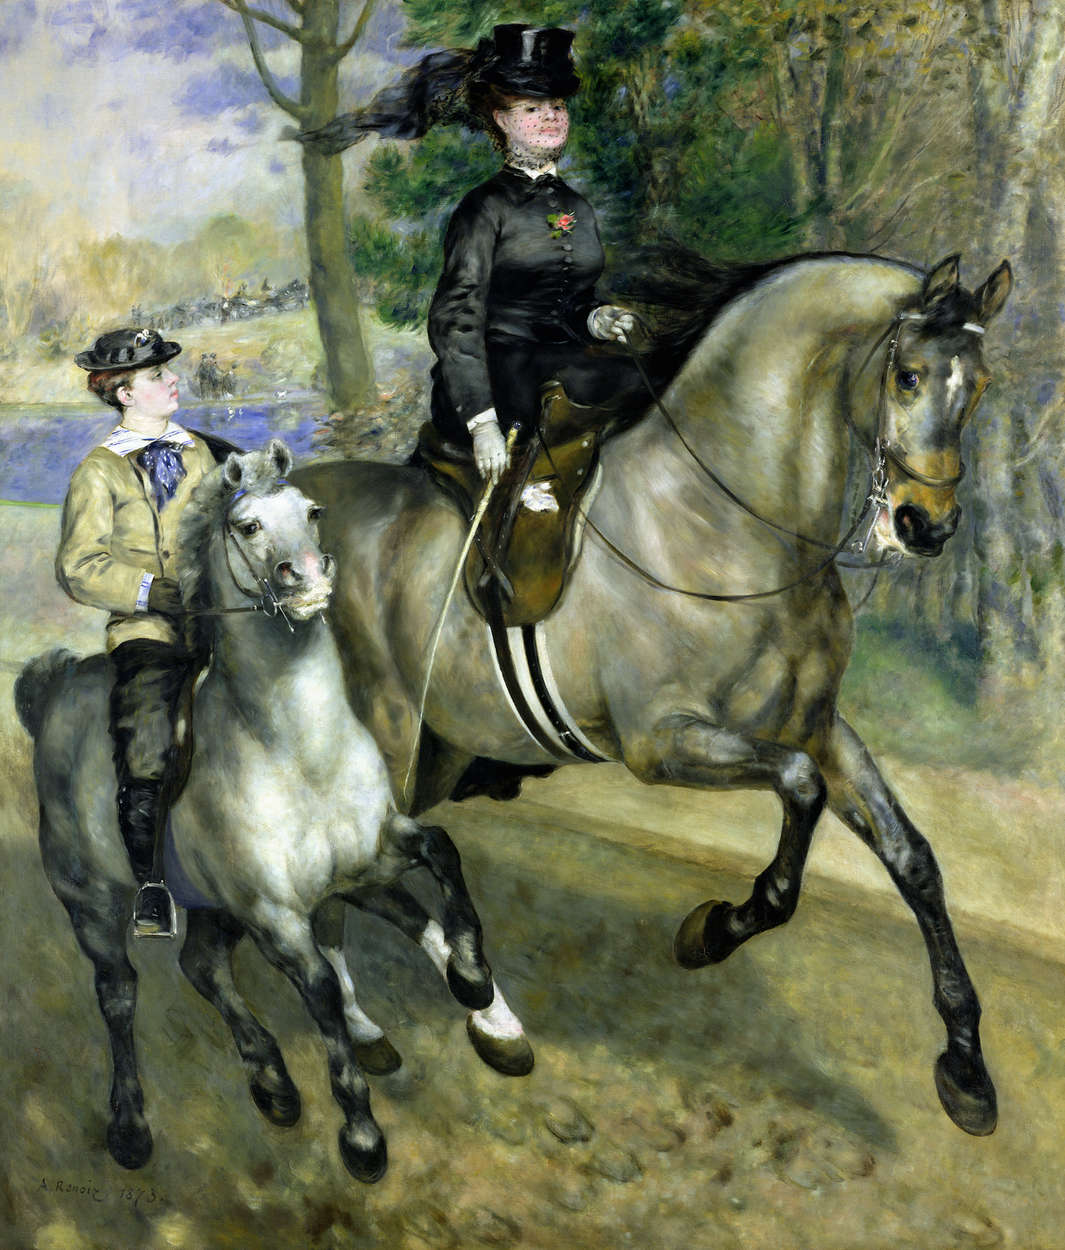             Ruiter in het Bois de Boulogne" muurschildering van Pierre Auguste Renoir
        